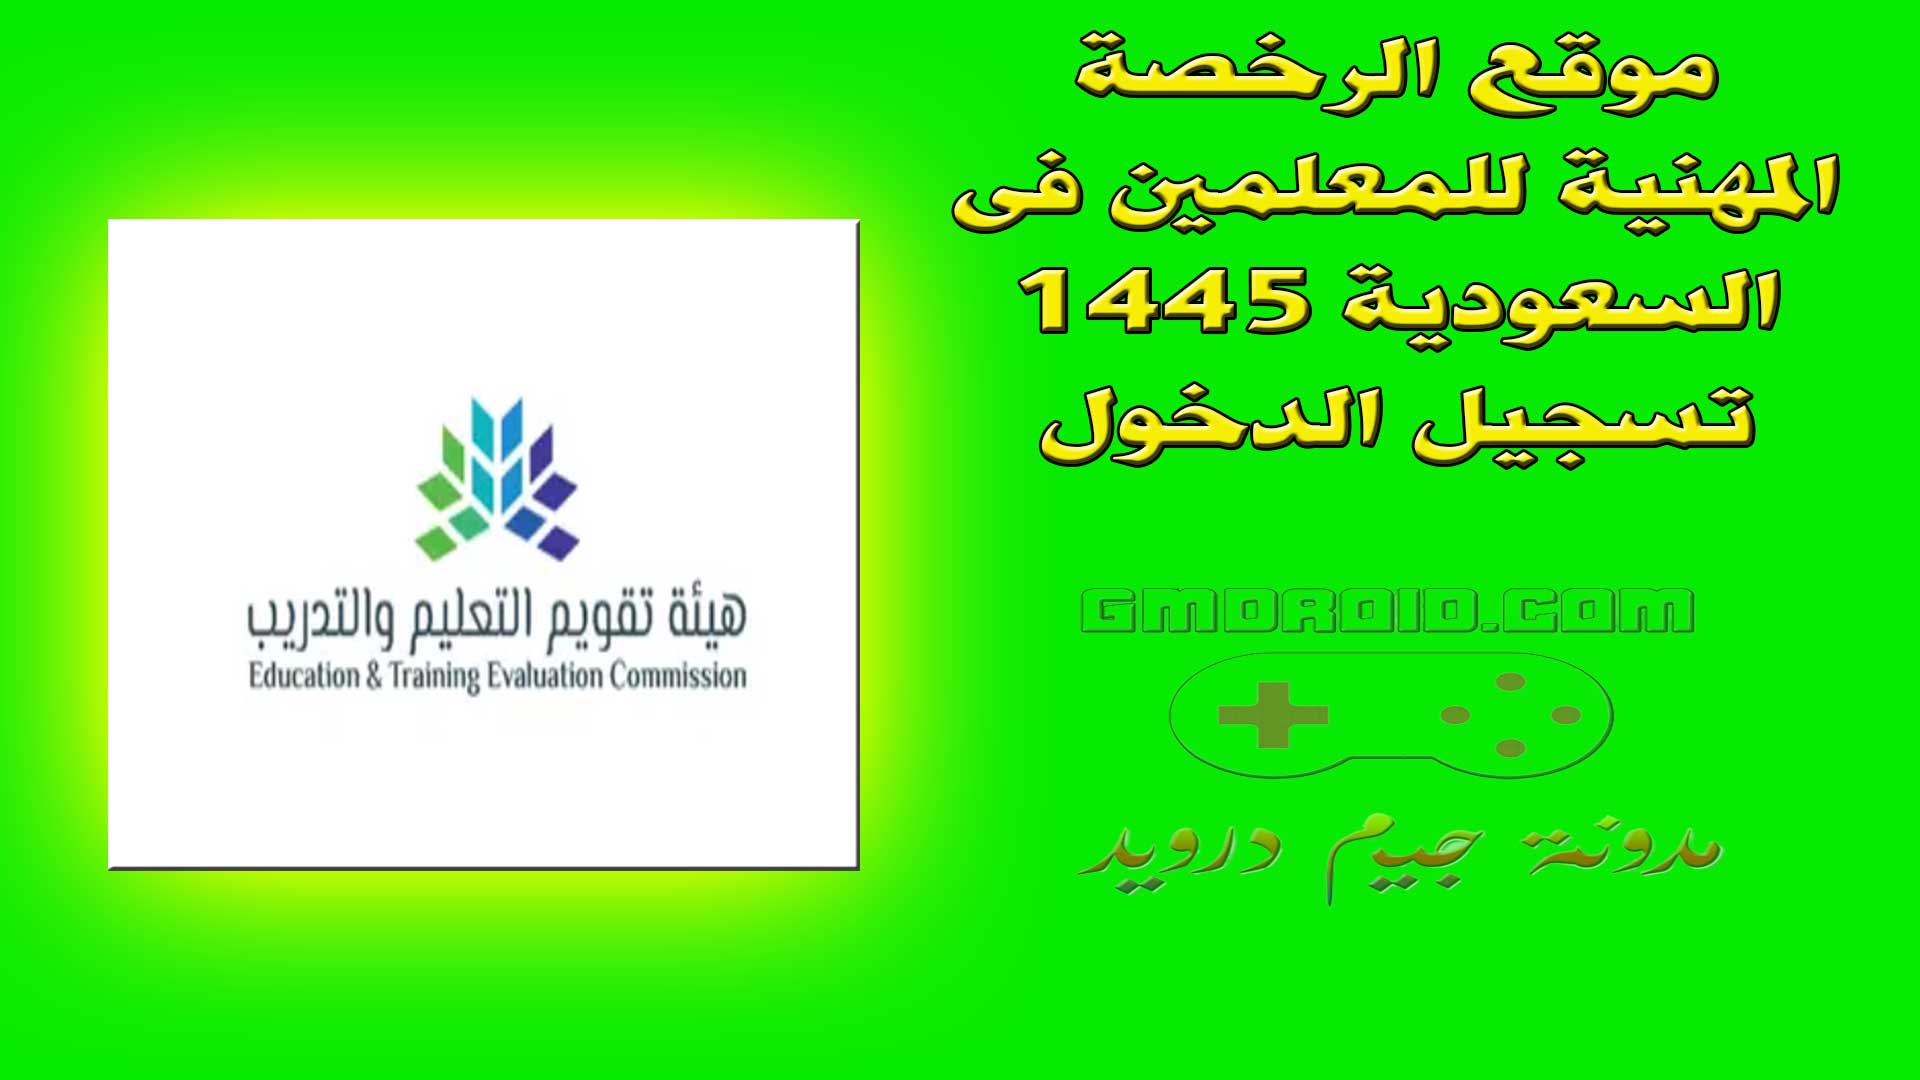 موقع الرخصة المهنية للمعلمين فى السعودية 1445 تسجيل الدخول